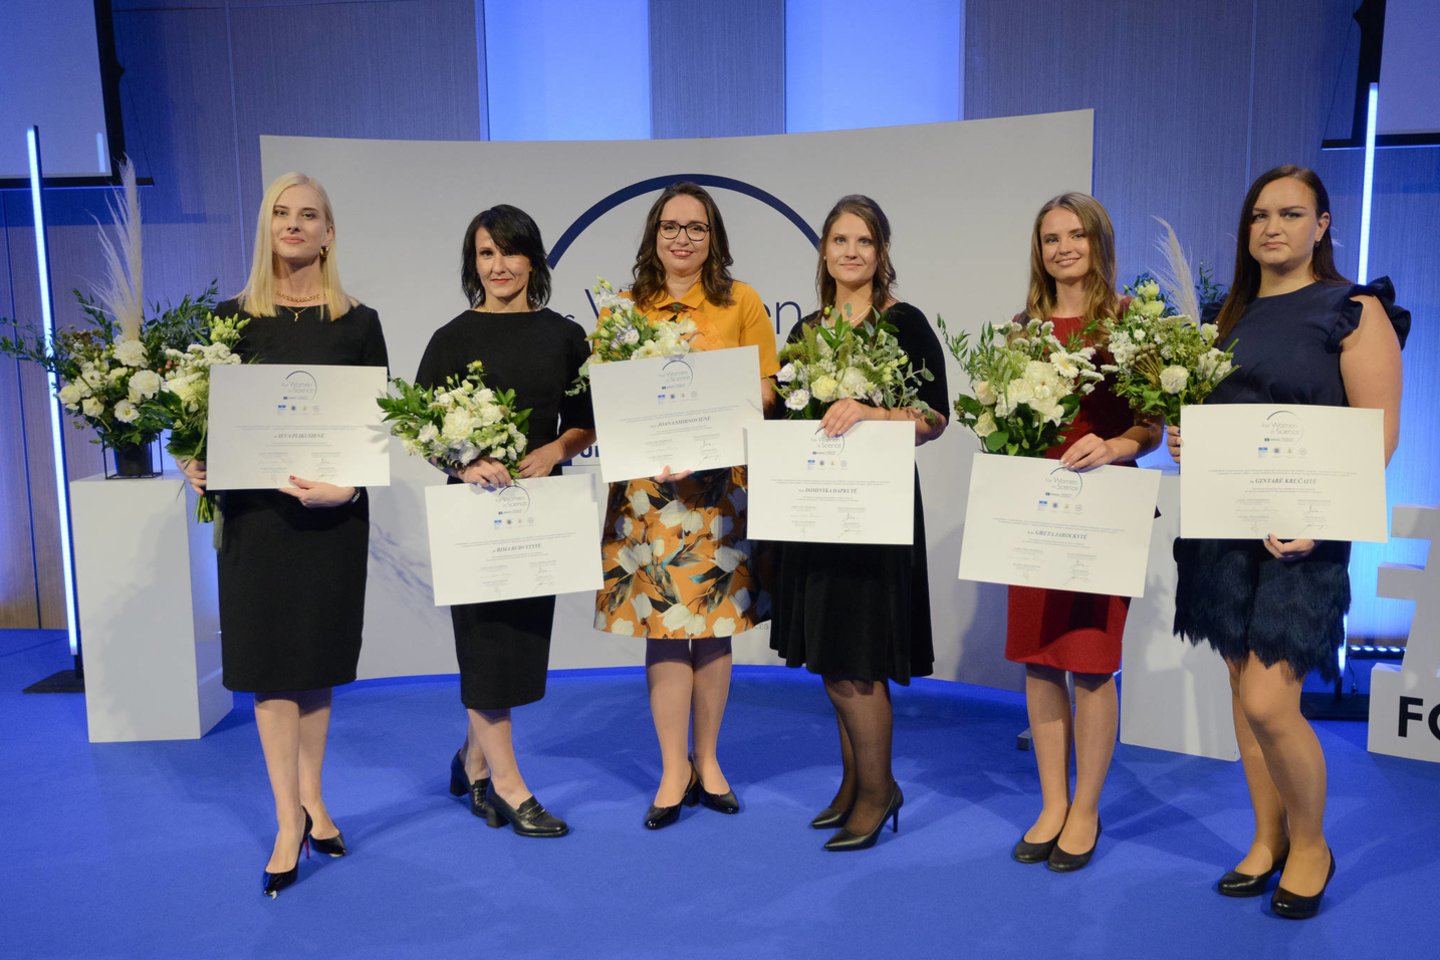 2020-2022 m. Moterys moksle laimėtojos. Ieva Plikusienė, Rima Budvytytė, Joana Smirnovienė, Dominyka Dapkutė, Greta Jarockytė, Gintarė Kručaitė.<br> Organizatorių nuotr.